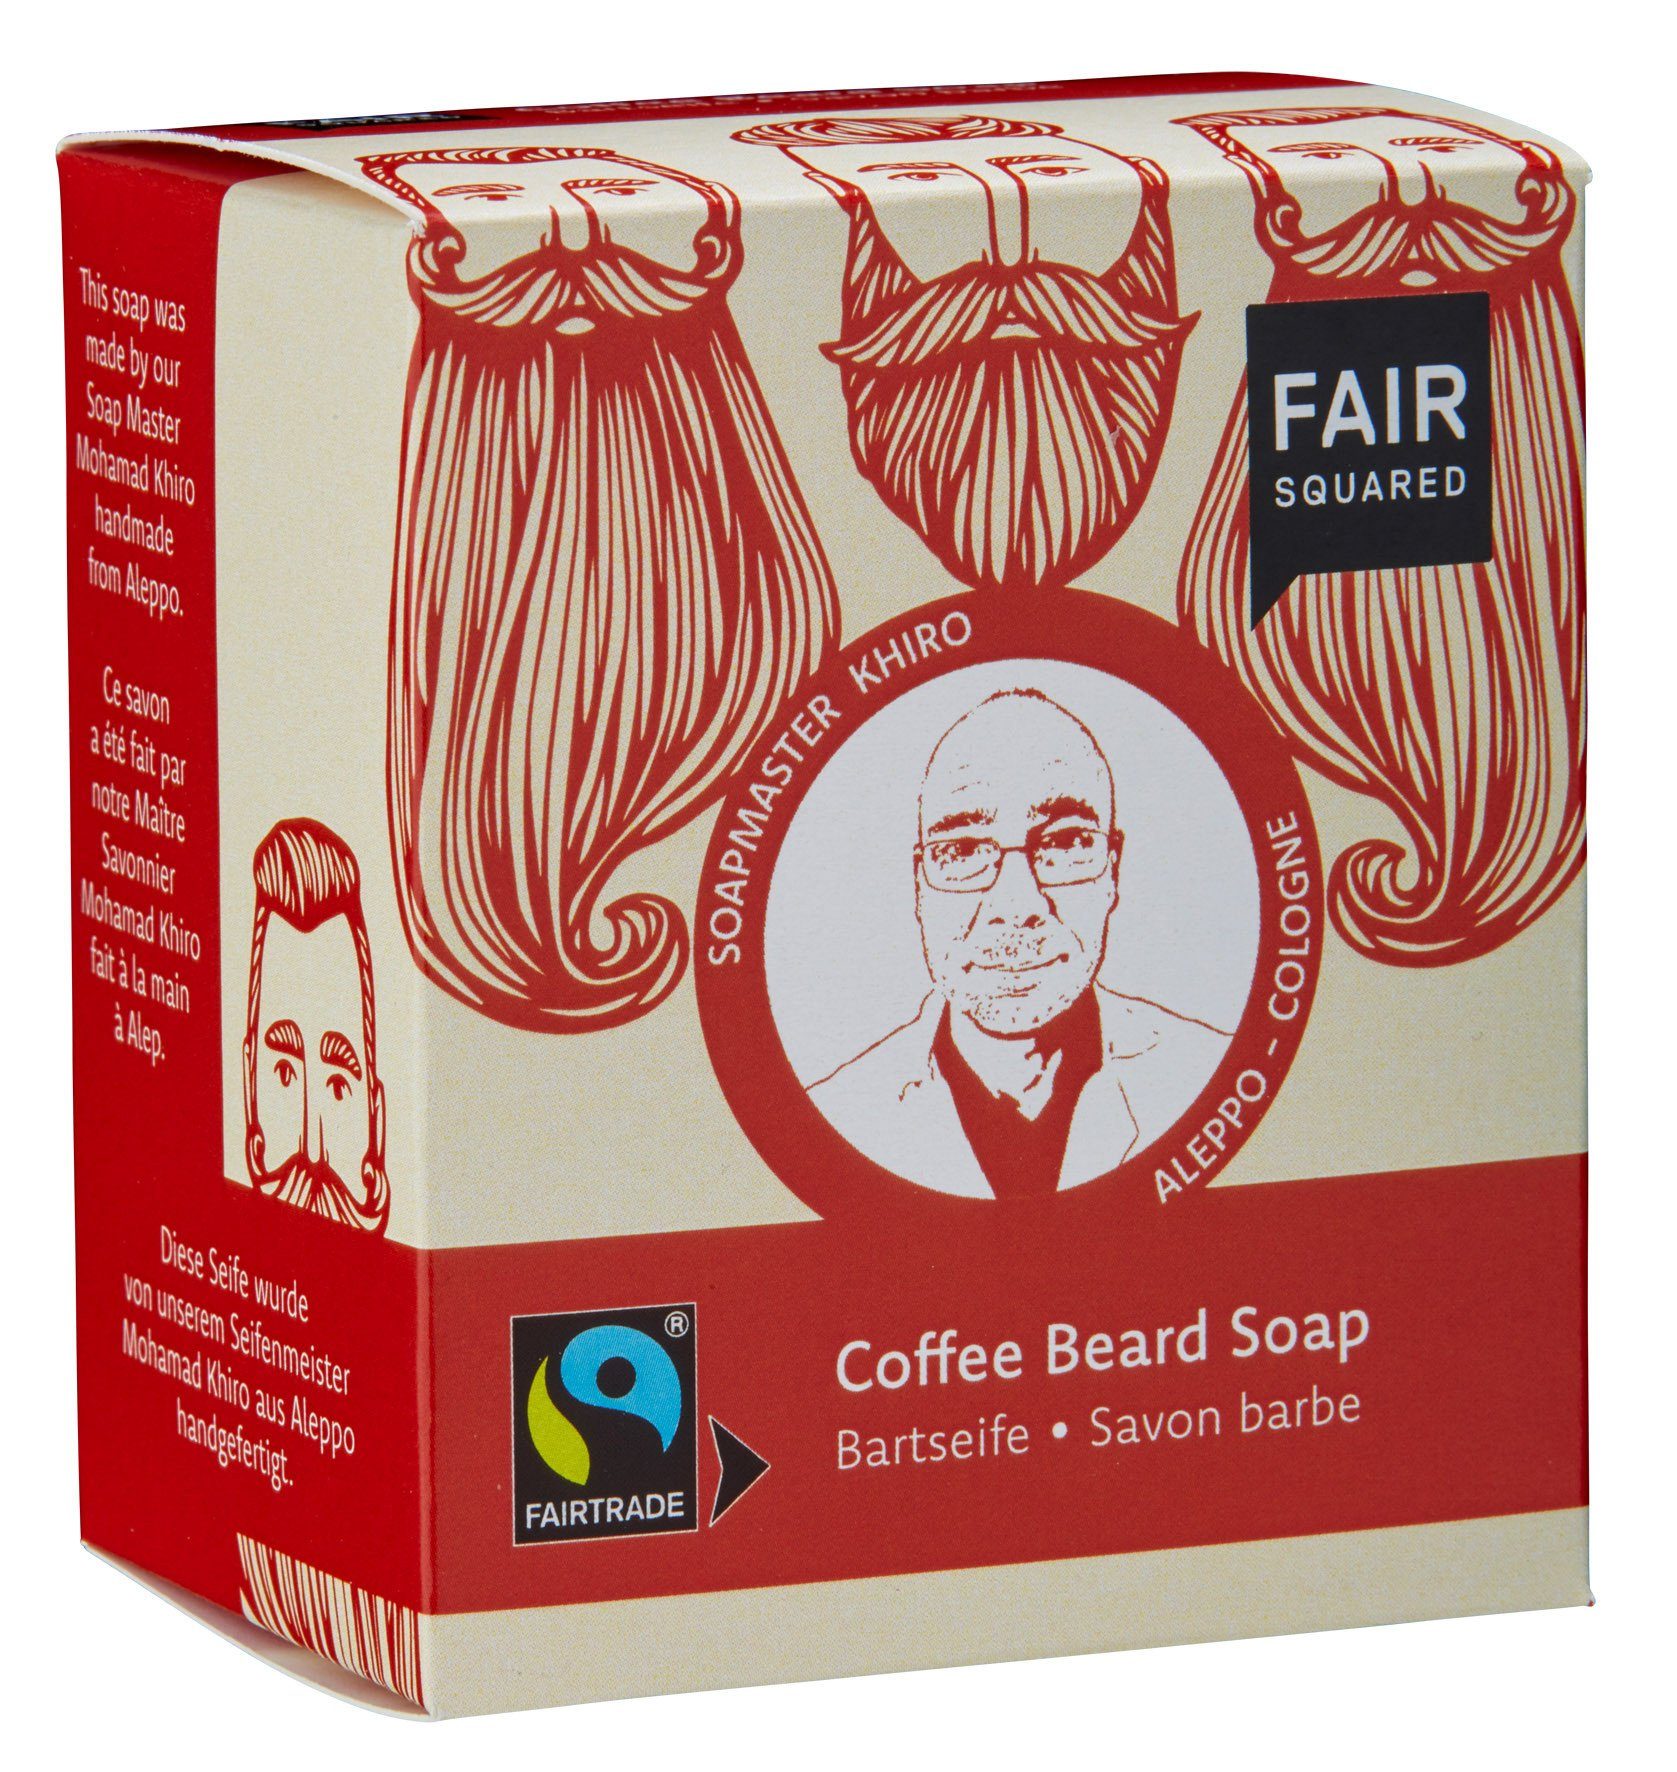 Fair Squared Gesichtsseife FAIR SQUARED Bartseife mit Kaffee- zur täglichen Pflege und Reinigung - Herrenpflege Bartpflege - 160 g, 1-tlg., Ideal für die tägliche Anwendung